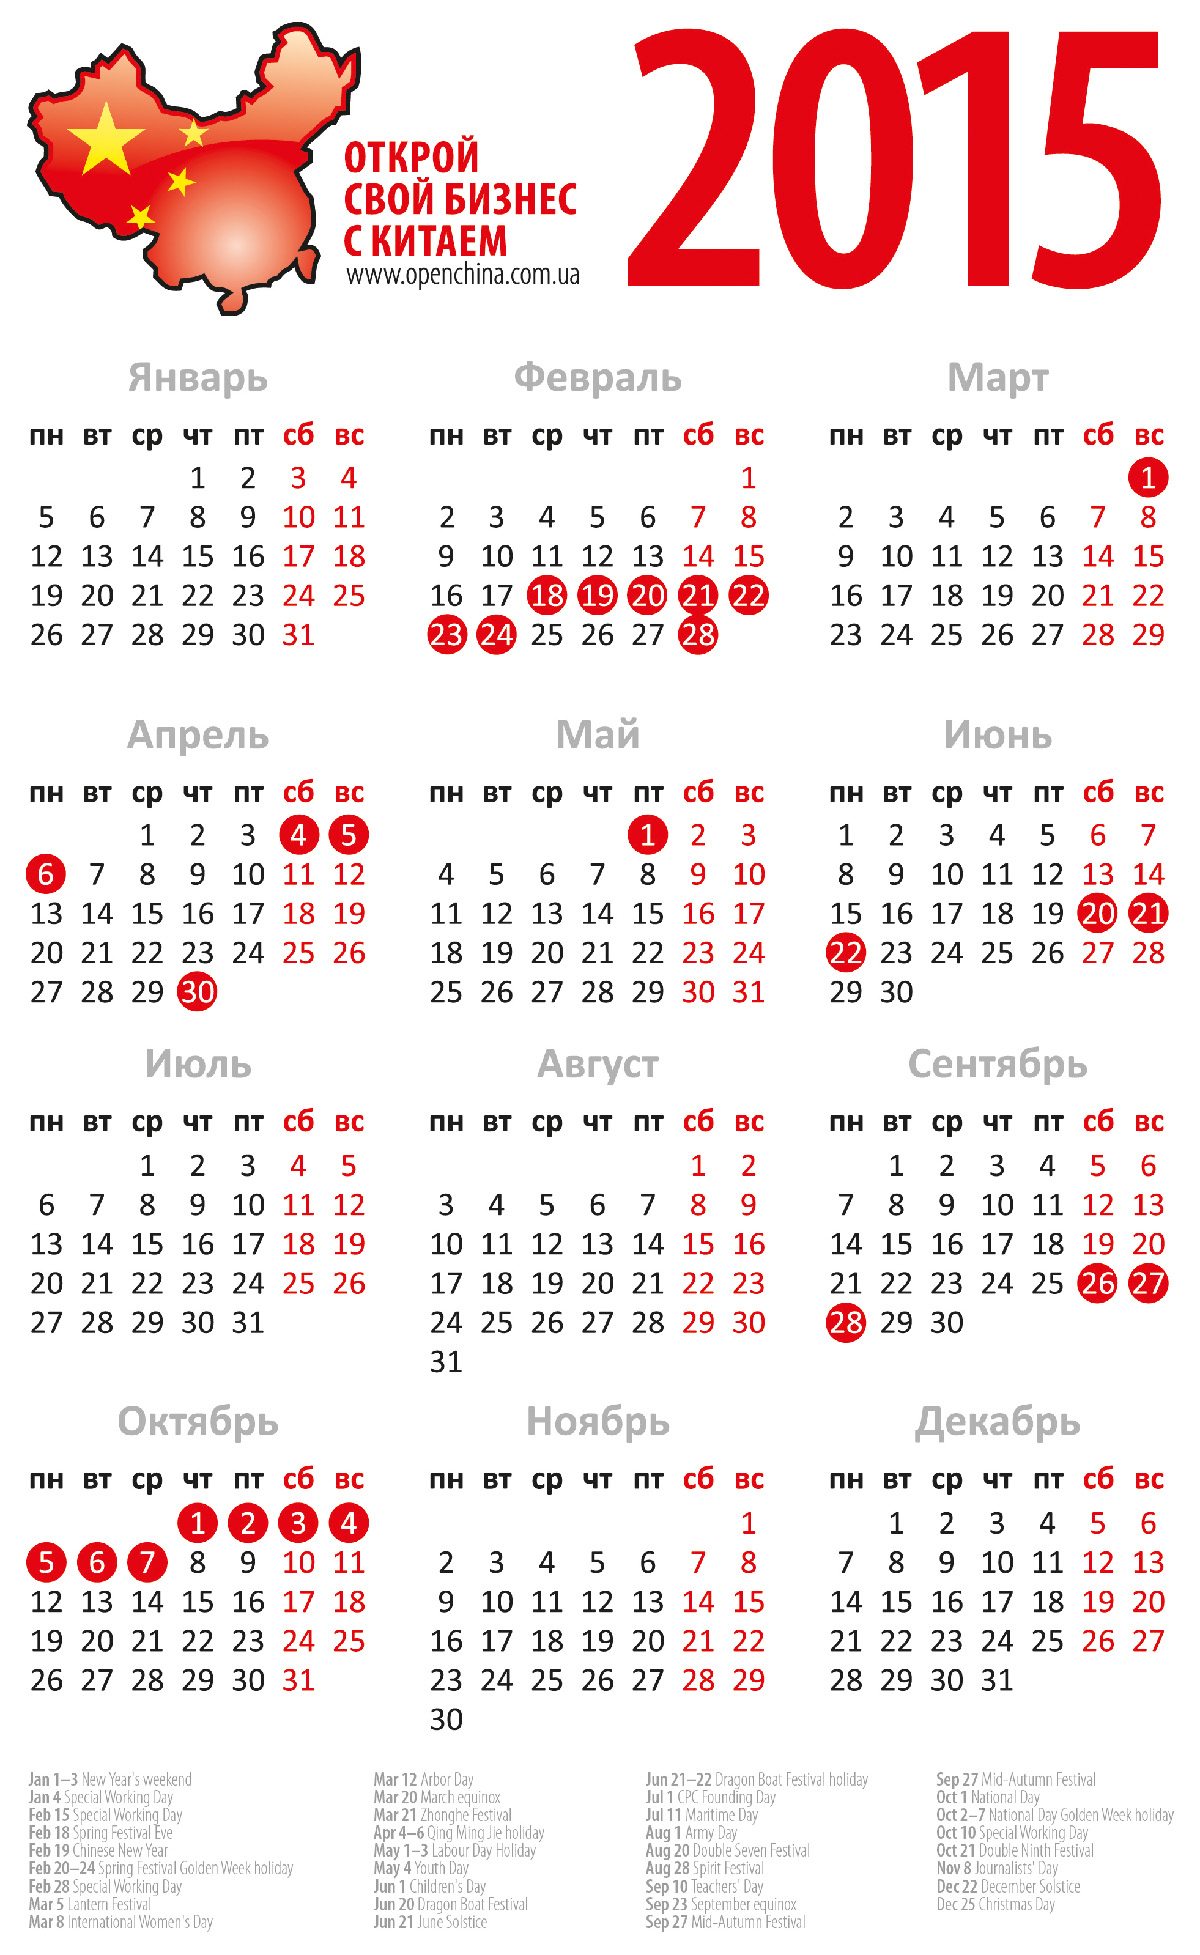 Календарь китая какой сейчас. Календарь праздников 2015. Выходные и праздничные дни в Китае. Календарь 2015 год СПРАЗДИКАМИ. Праздники в календаре 2015 года.